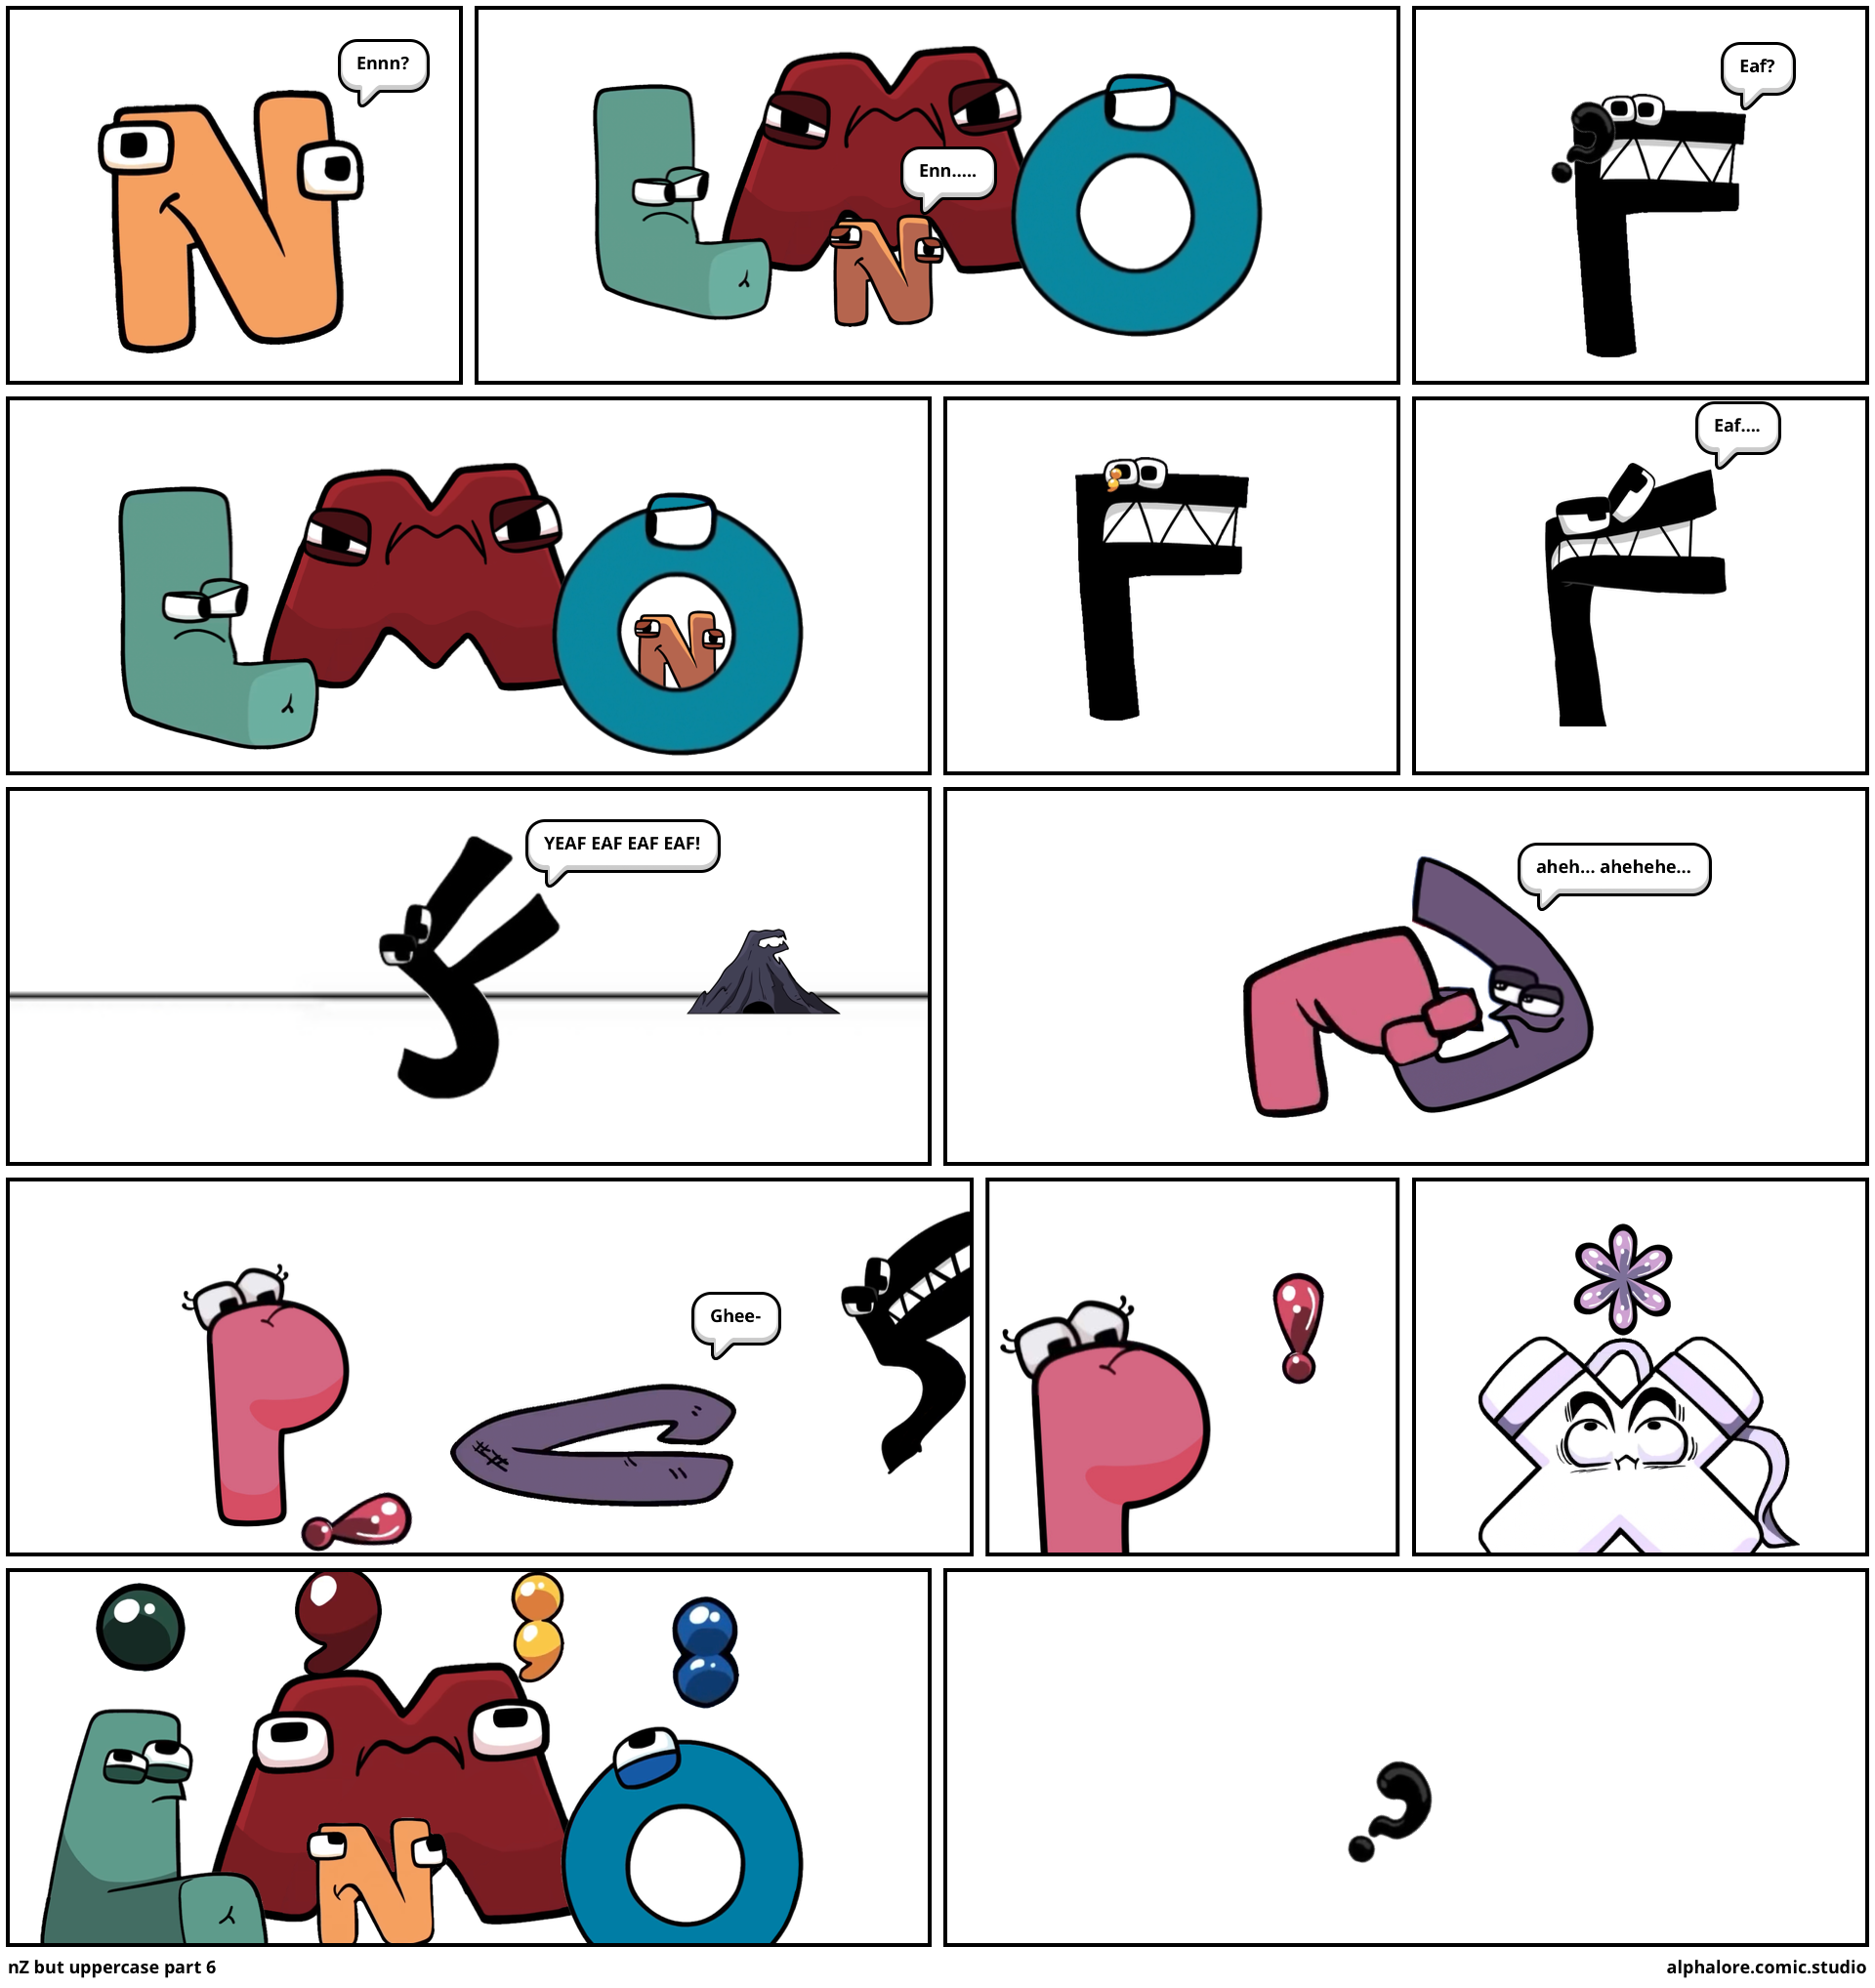 MaiaL's alphabet lore but lowercase: H Part 2-J? - Comic Studio